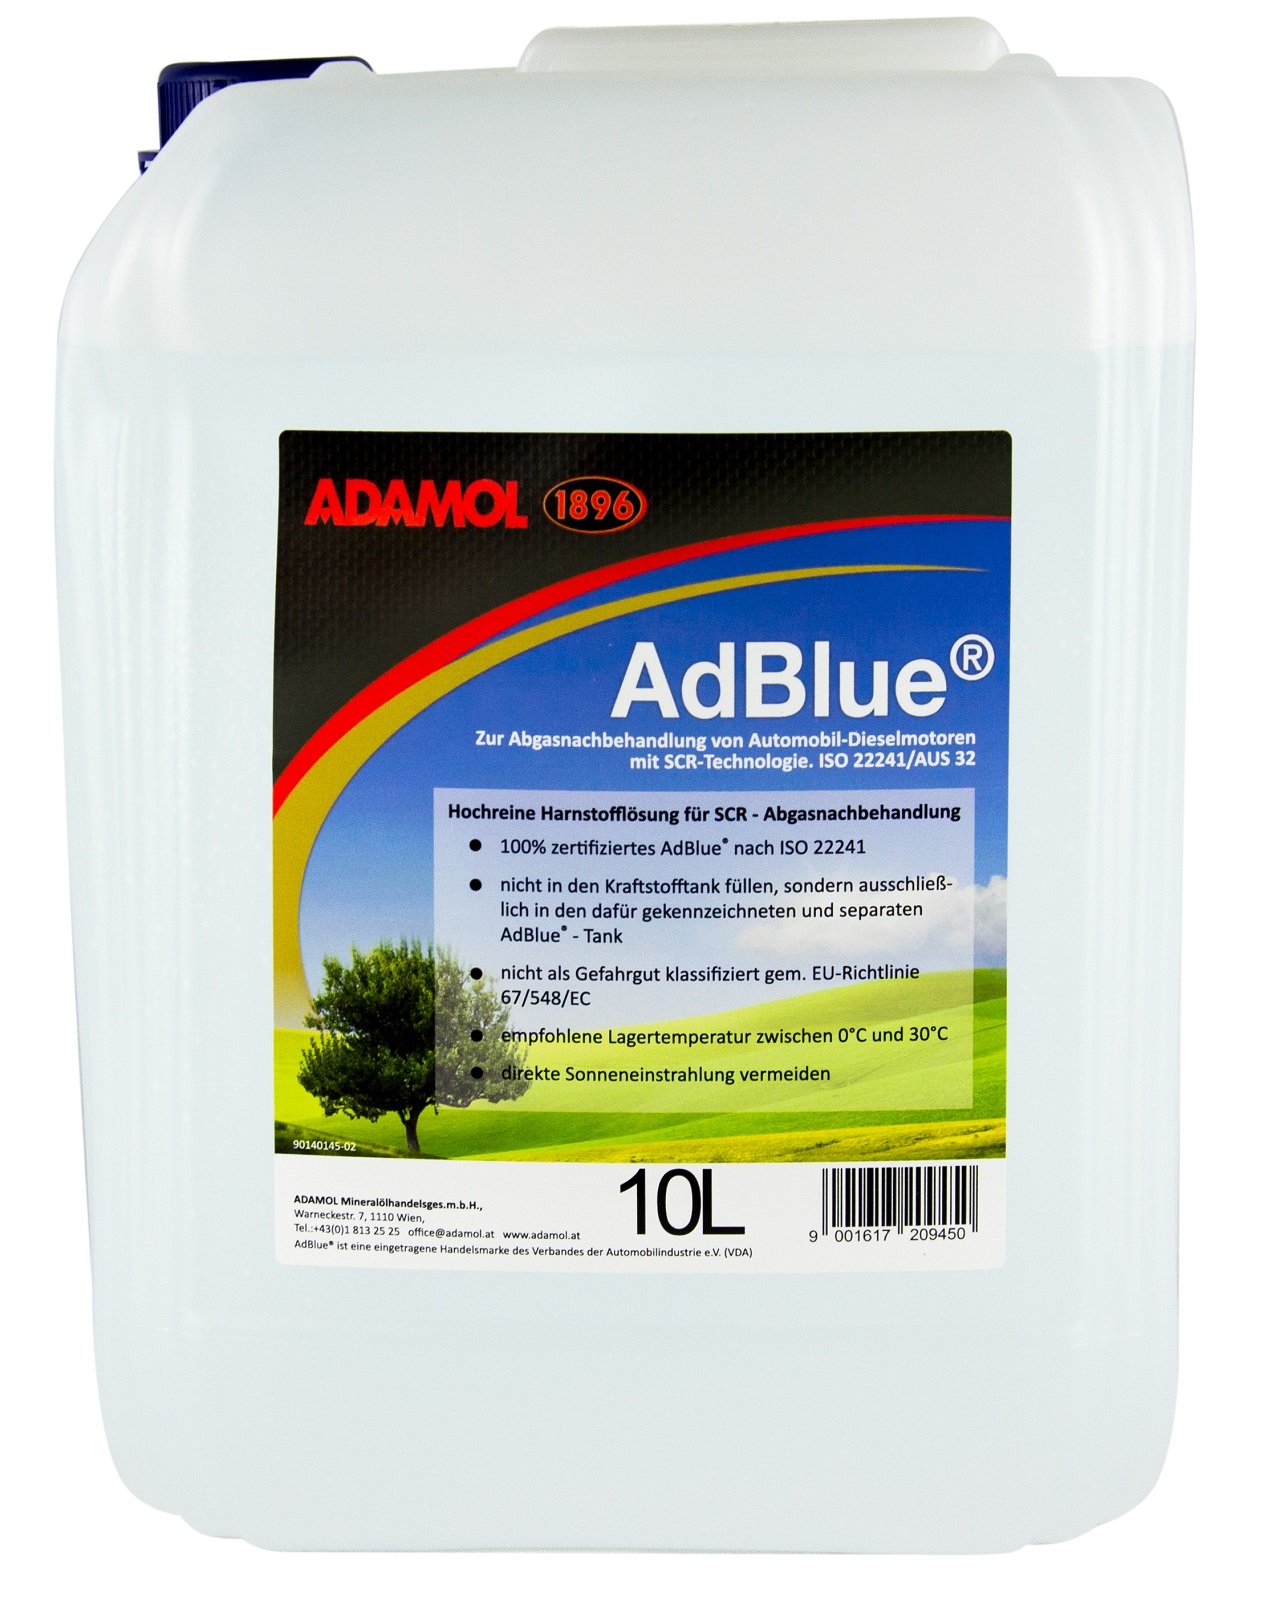 ADAMOL 1896 AdBlue 10 Liter, mit Füllschlauch, SCR Harnstofflösung, ISO 22241 von ADAMOL 1896